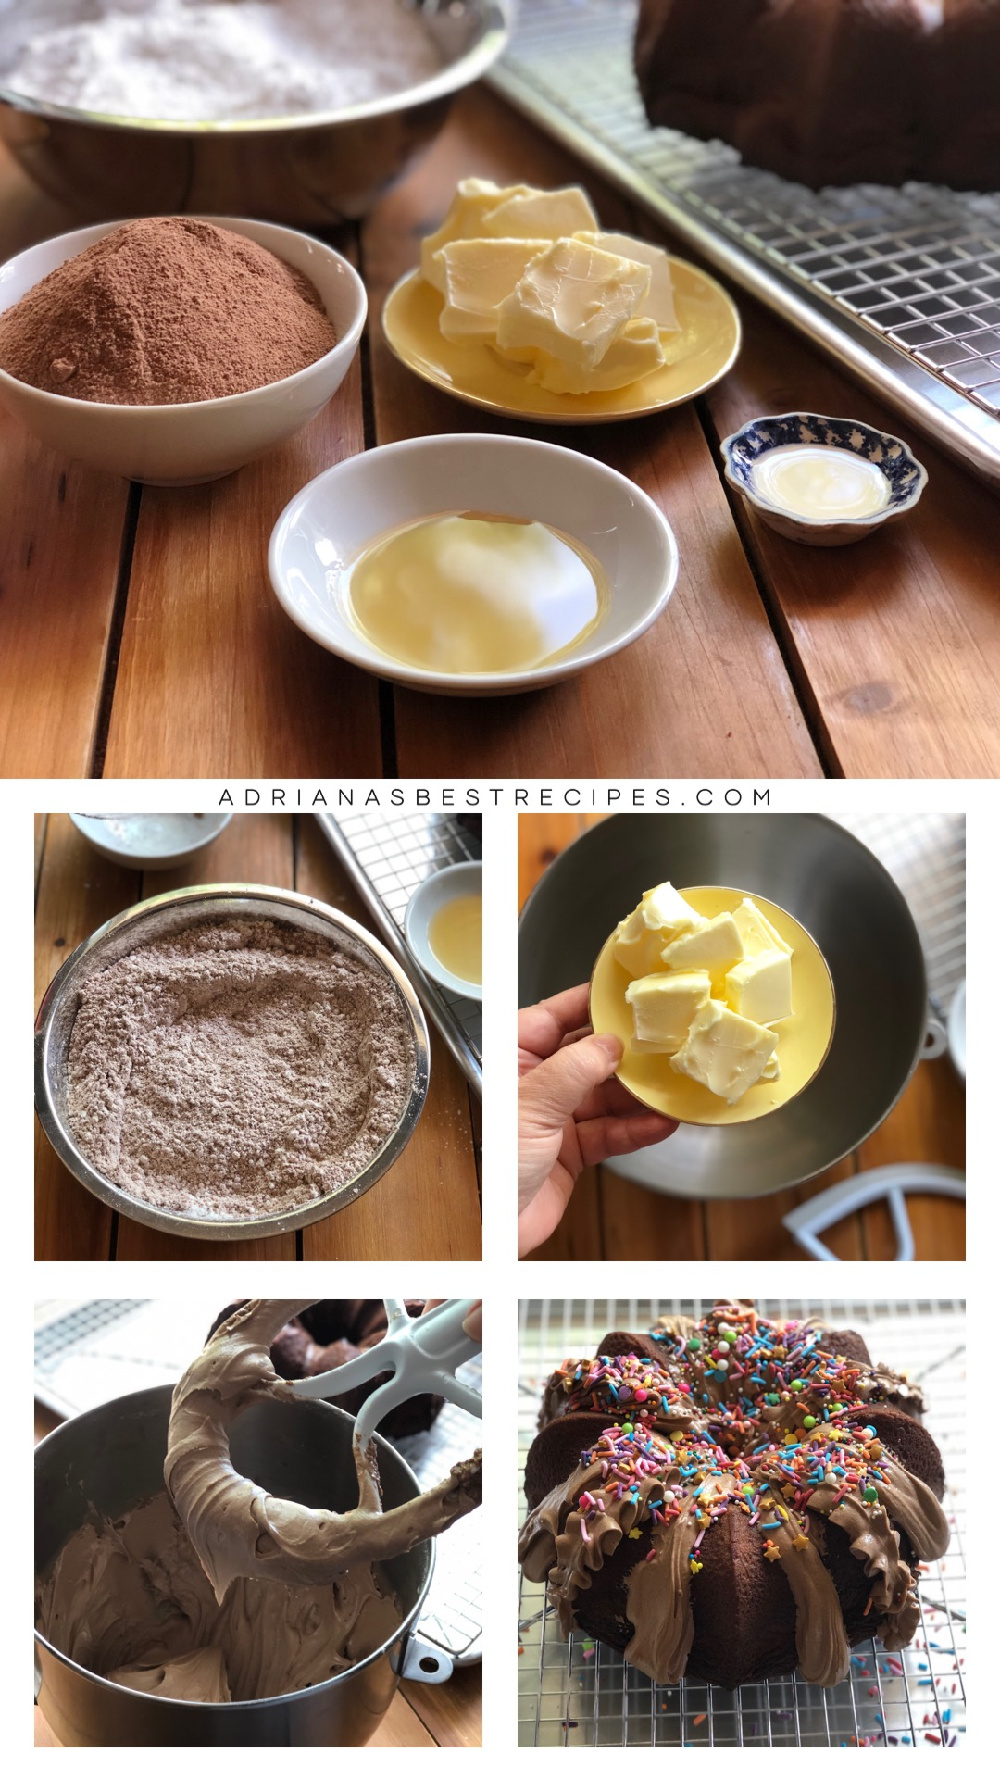 Haciendo el betún de chocolate con mantequilla, azúcar glas, chocolate en polvo, extracto de vainilla y licor de almendras